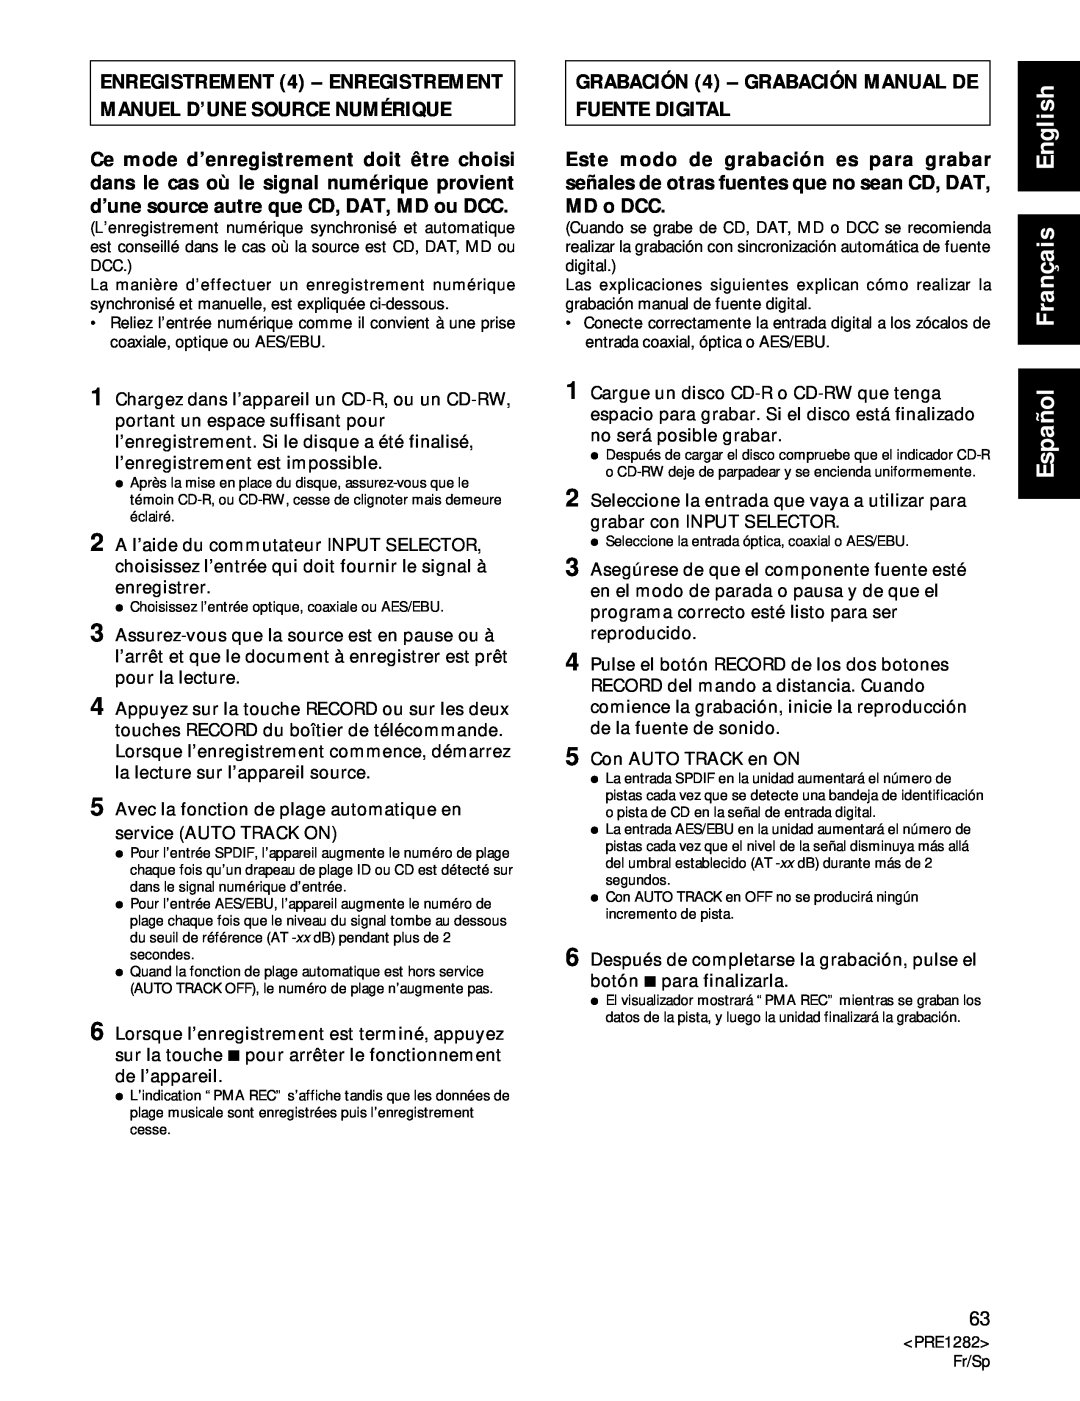 Americana Appliances CDR-850 manual GRABACIÓN 4 – GRABACIÓN MANUAL DE FUENTE DIGITAL, Español Français English 